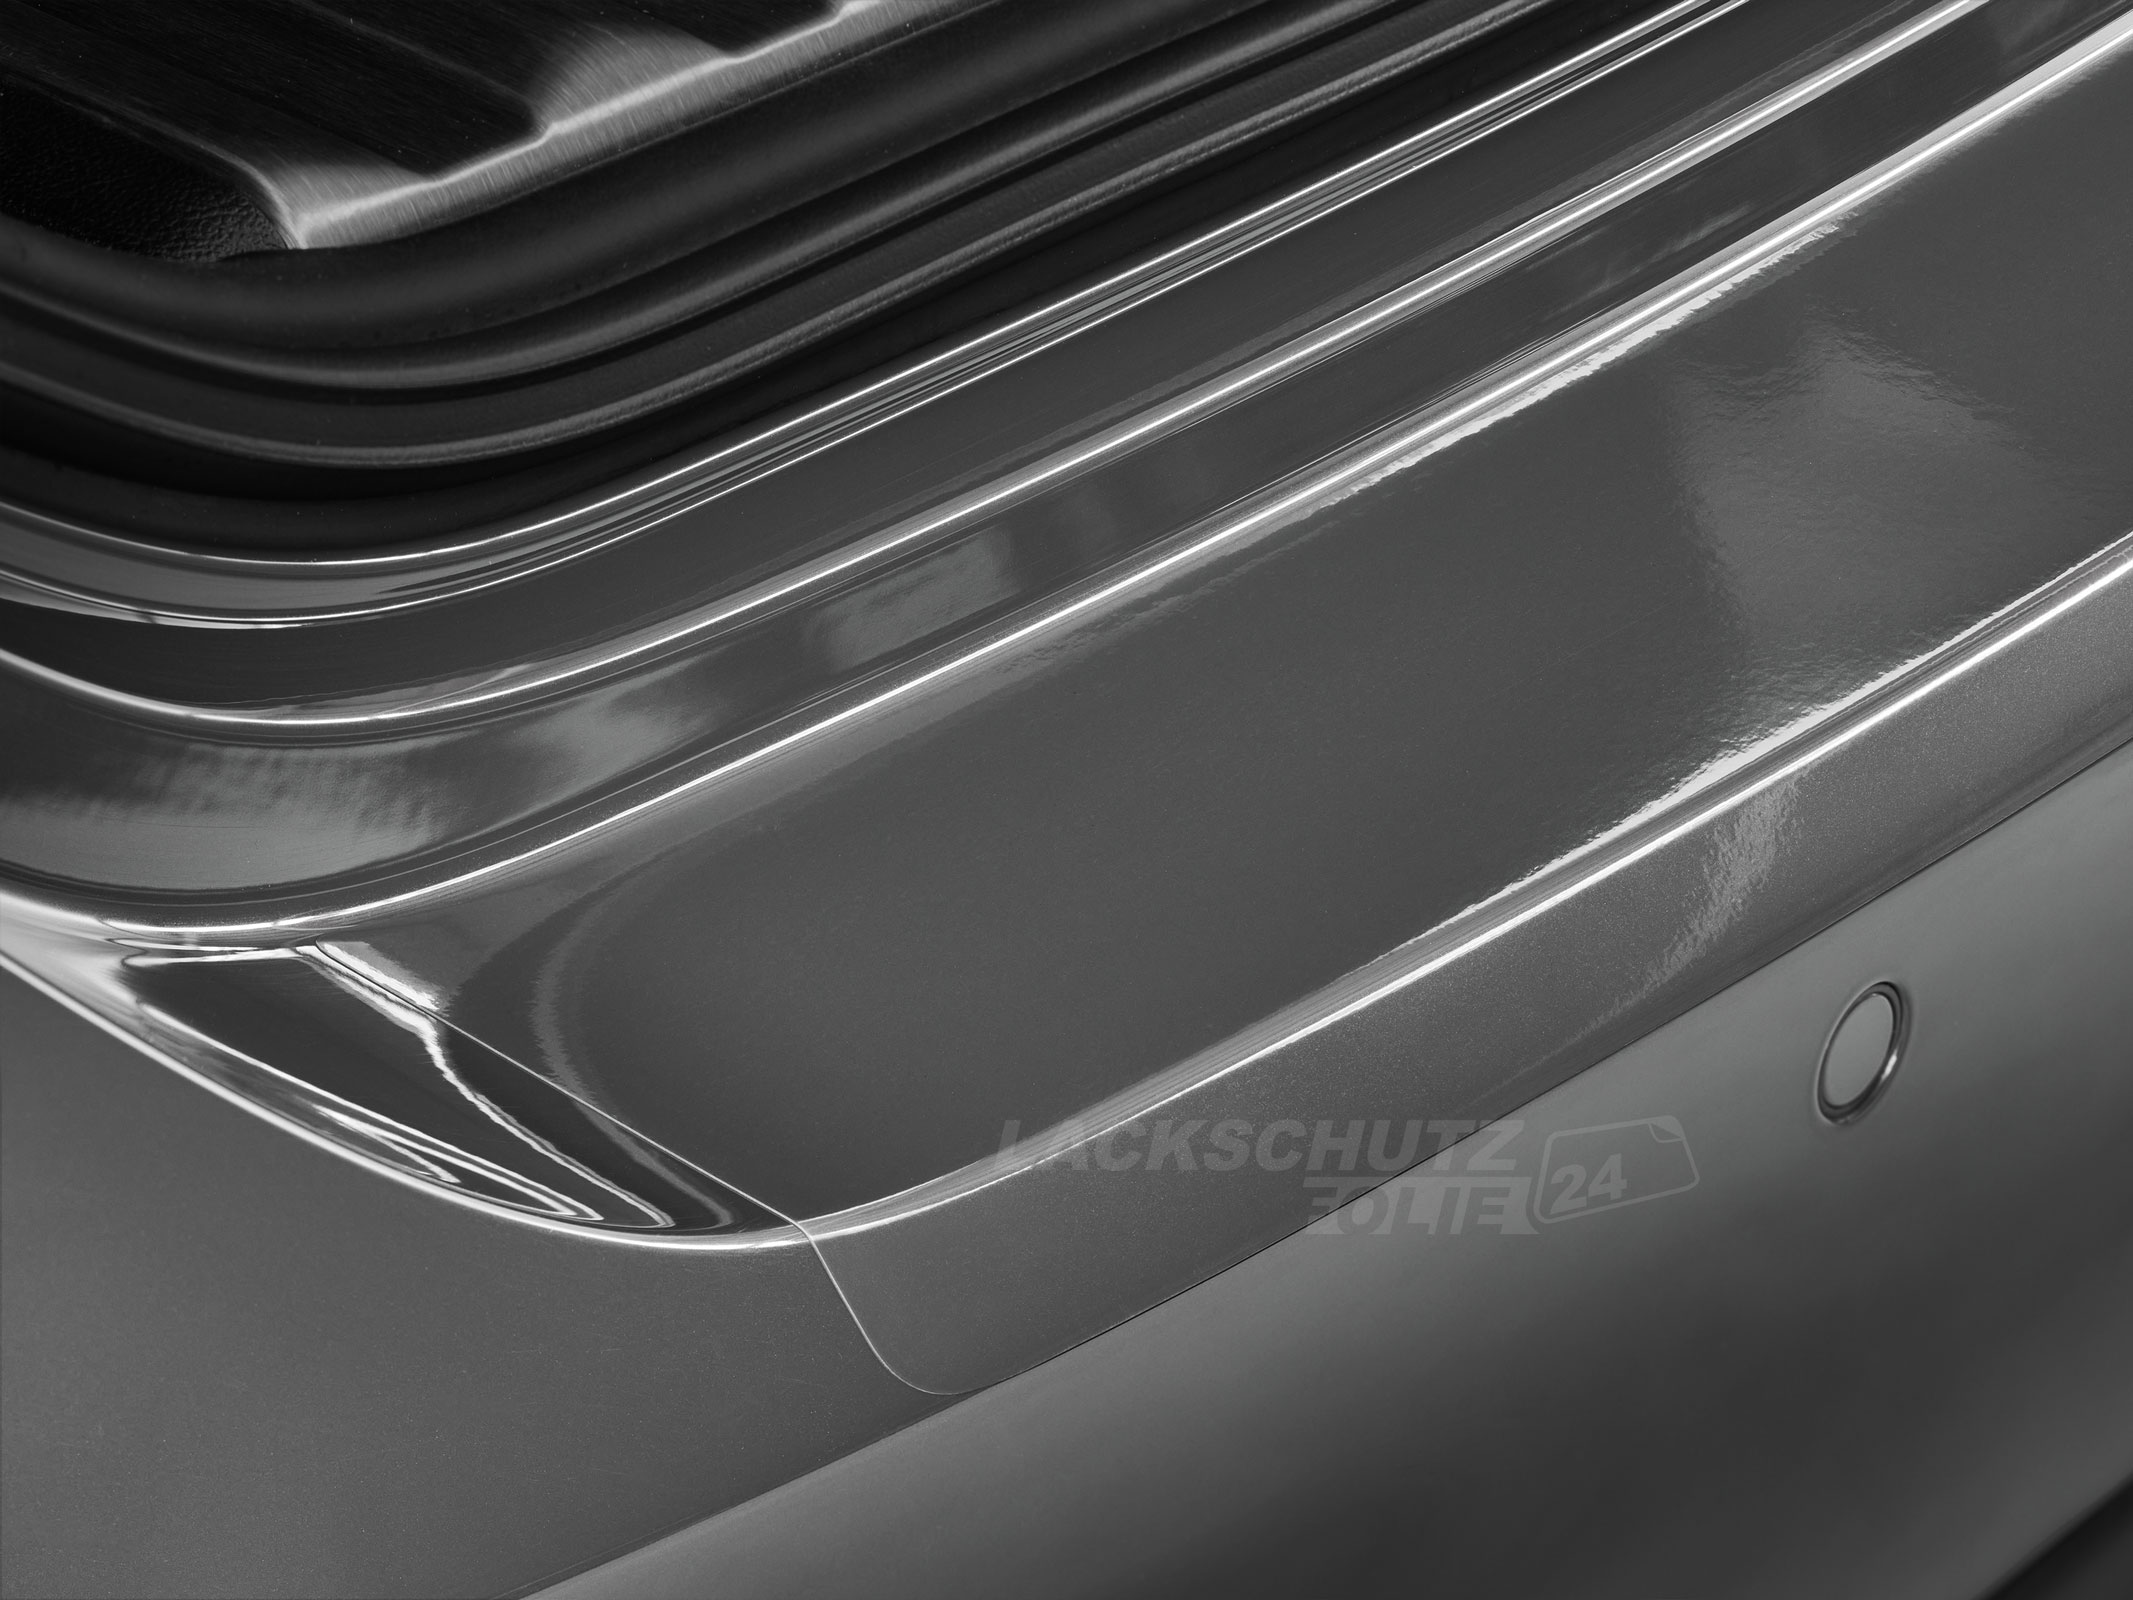 Ladekantenschutzfolie - Transparent Glatt Hochglänzend 240 µm stark für Citroen C5 Aircross ab BJ 02/2019